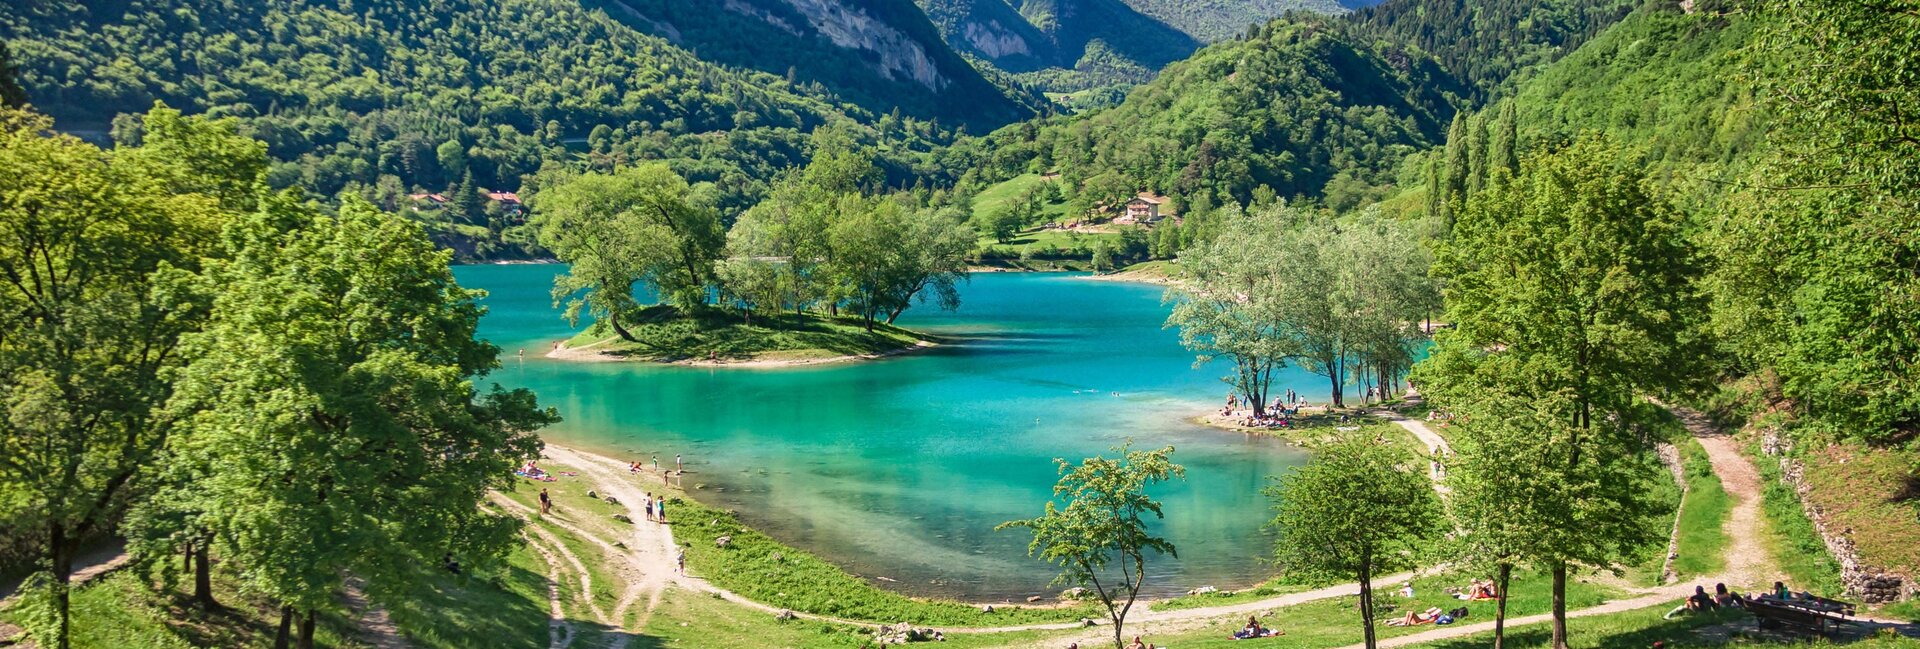 Lake Tenno Italy, hiking